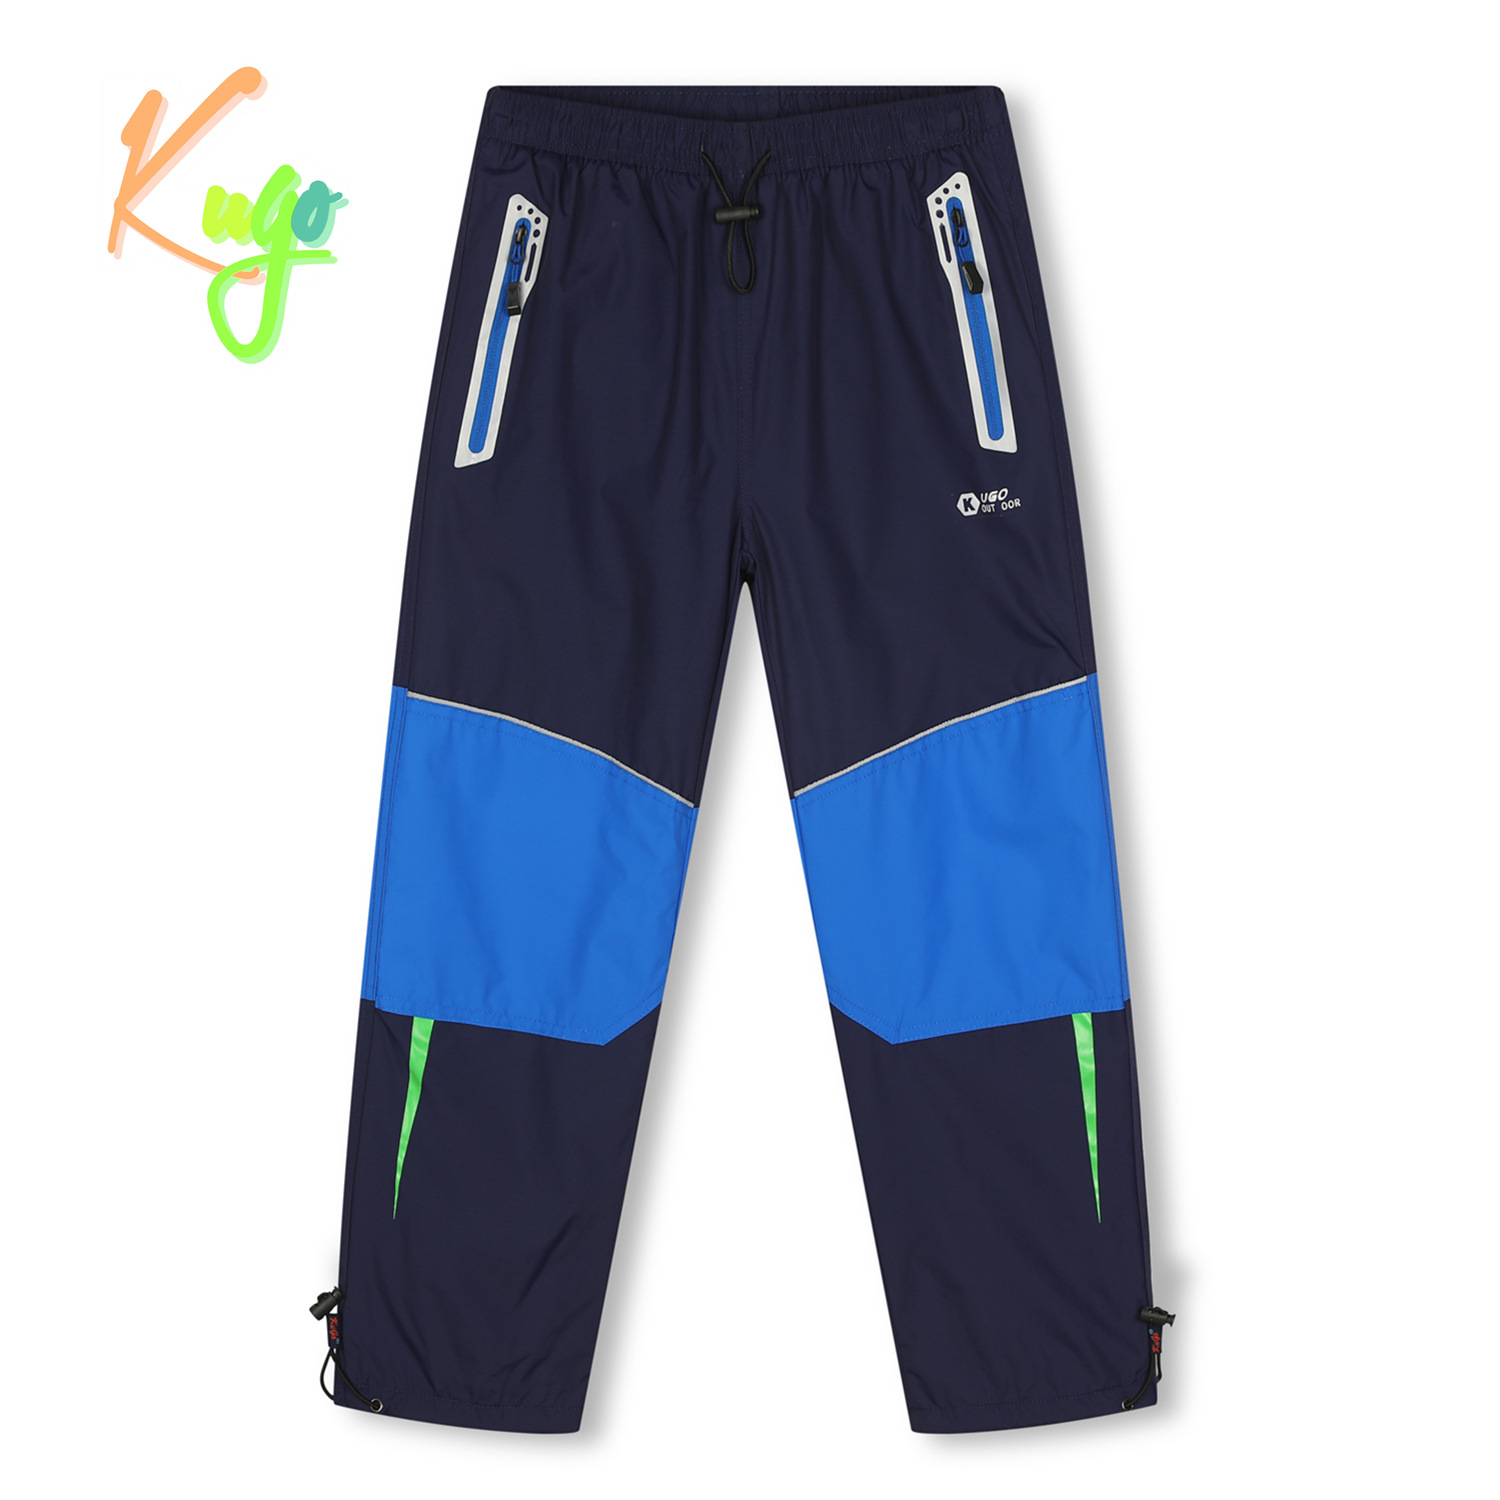 Chlapecké šusťákové kalhoty, zateplené - KUGO DK7132, tmavě modrá Barva: Modrá tmavě, Velikost: 140